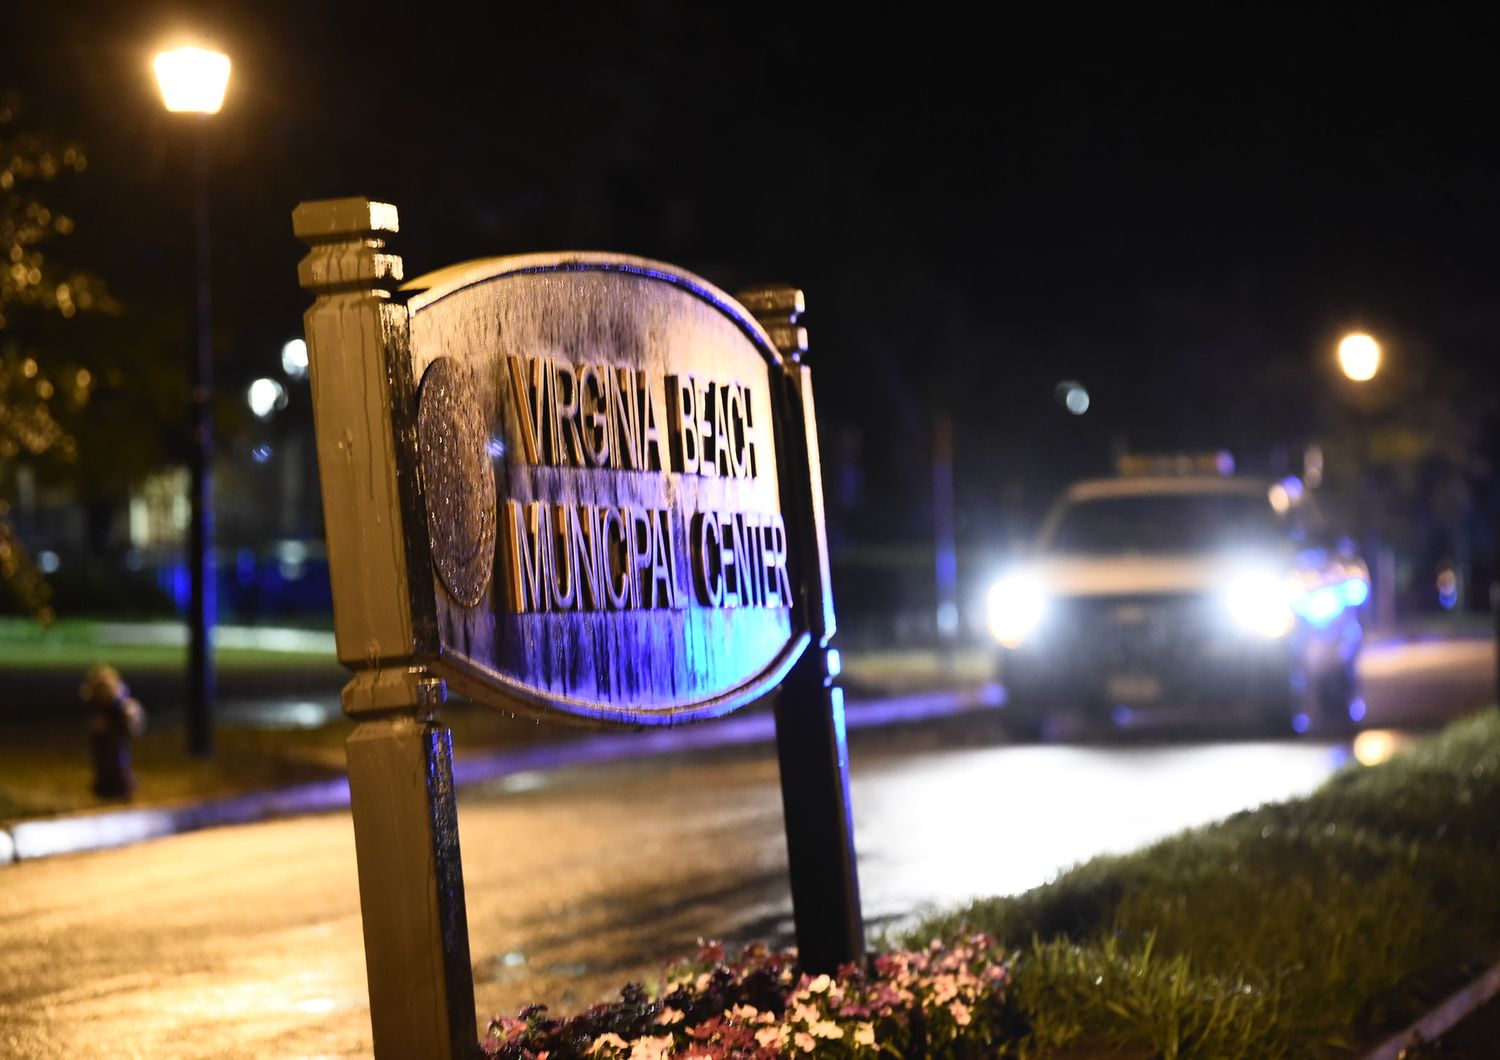 La sparatoria ha avuto luogo negli uffici comunali di Virginia Beach